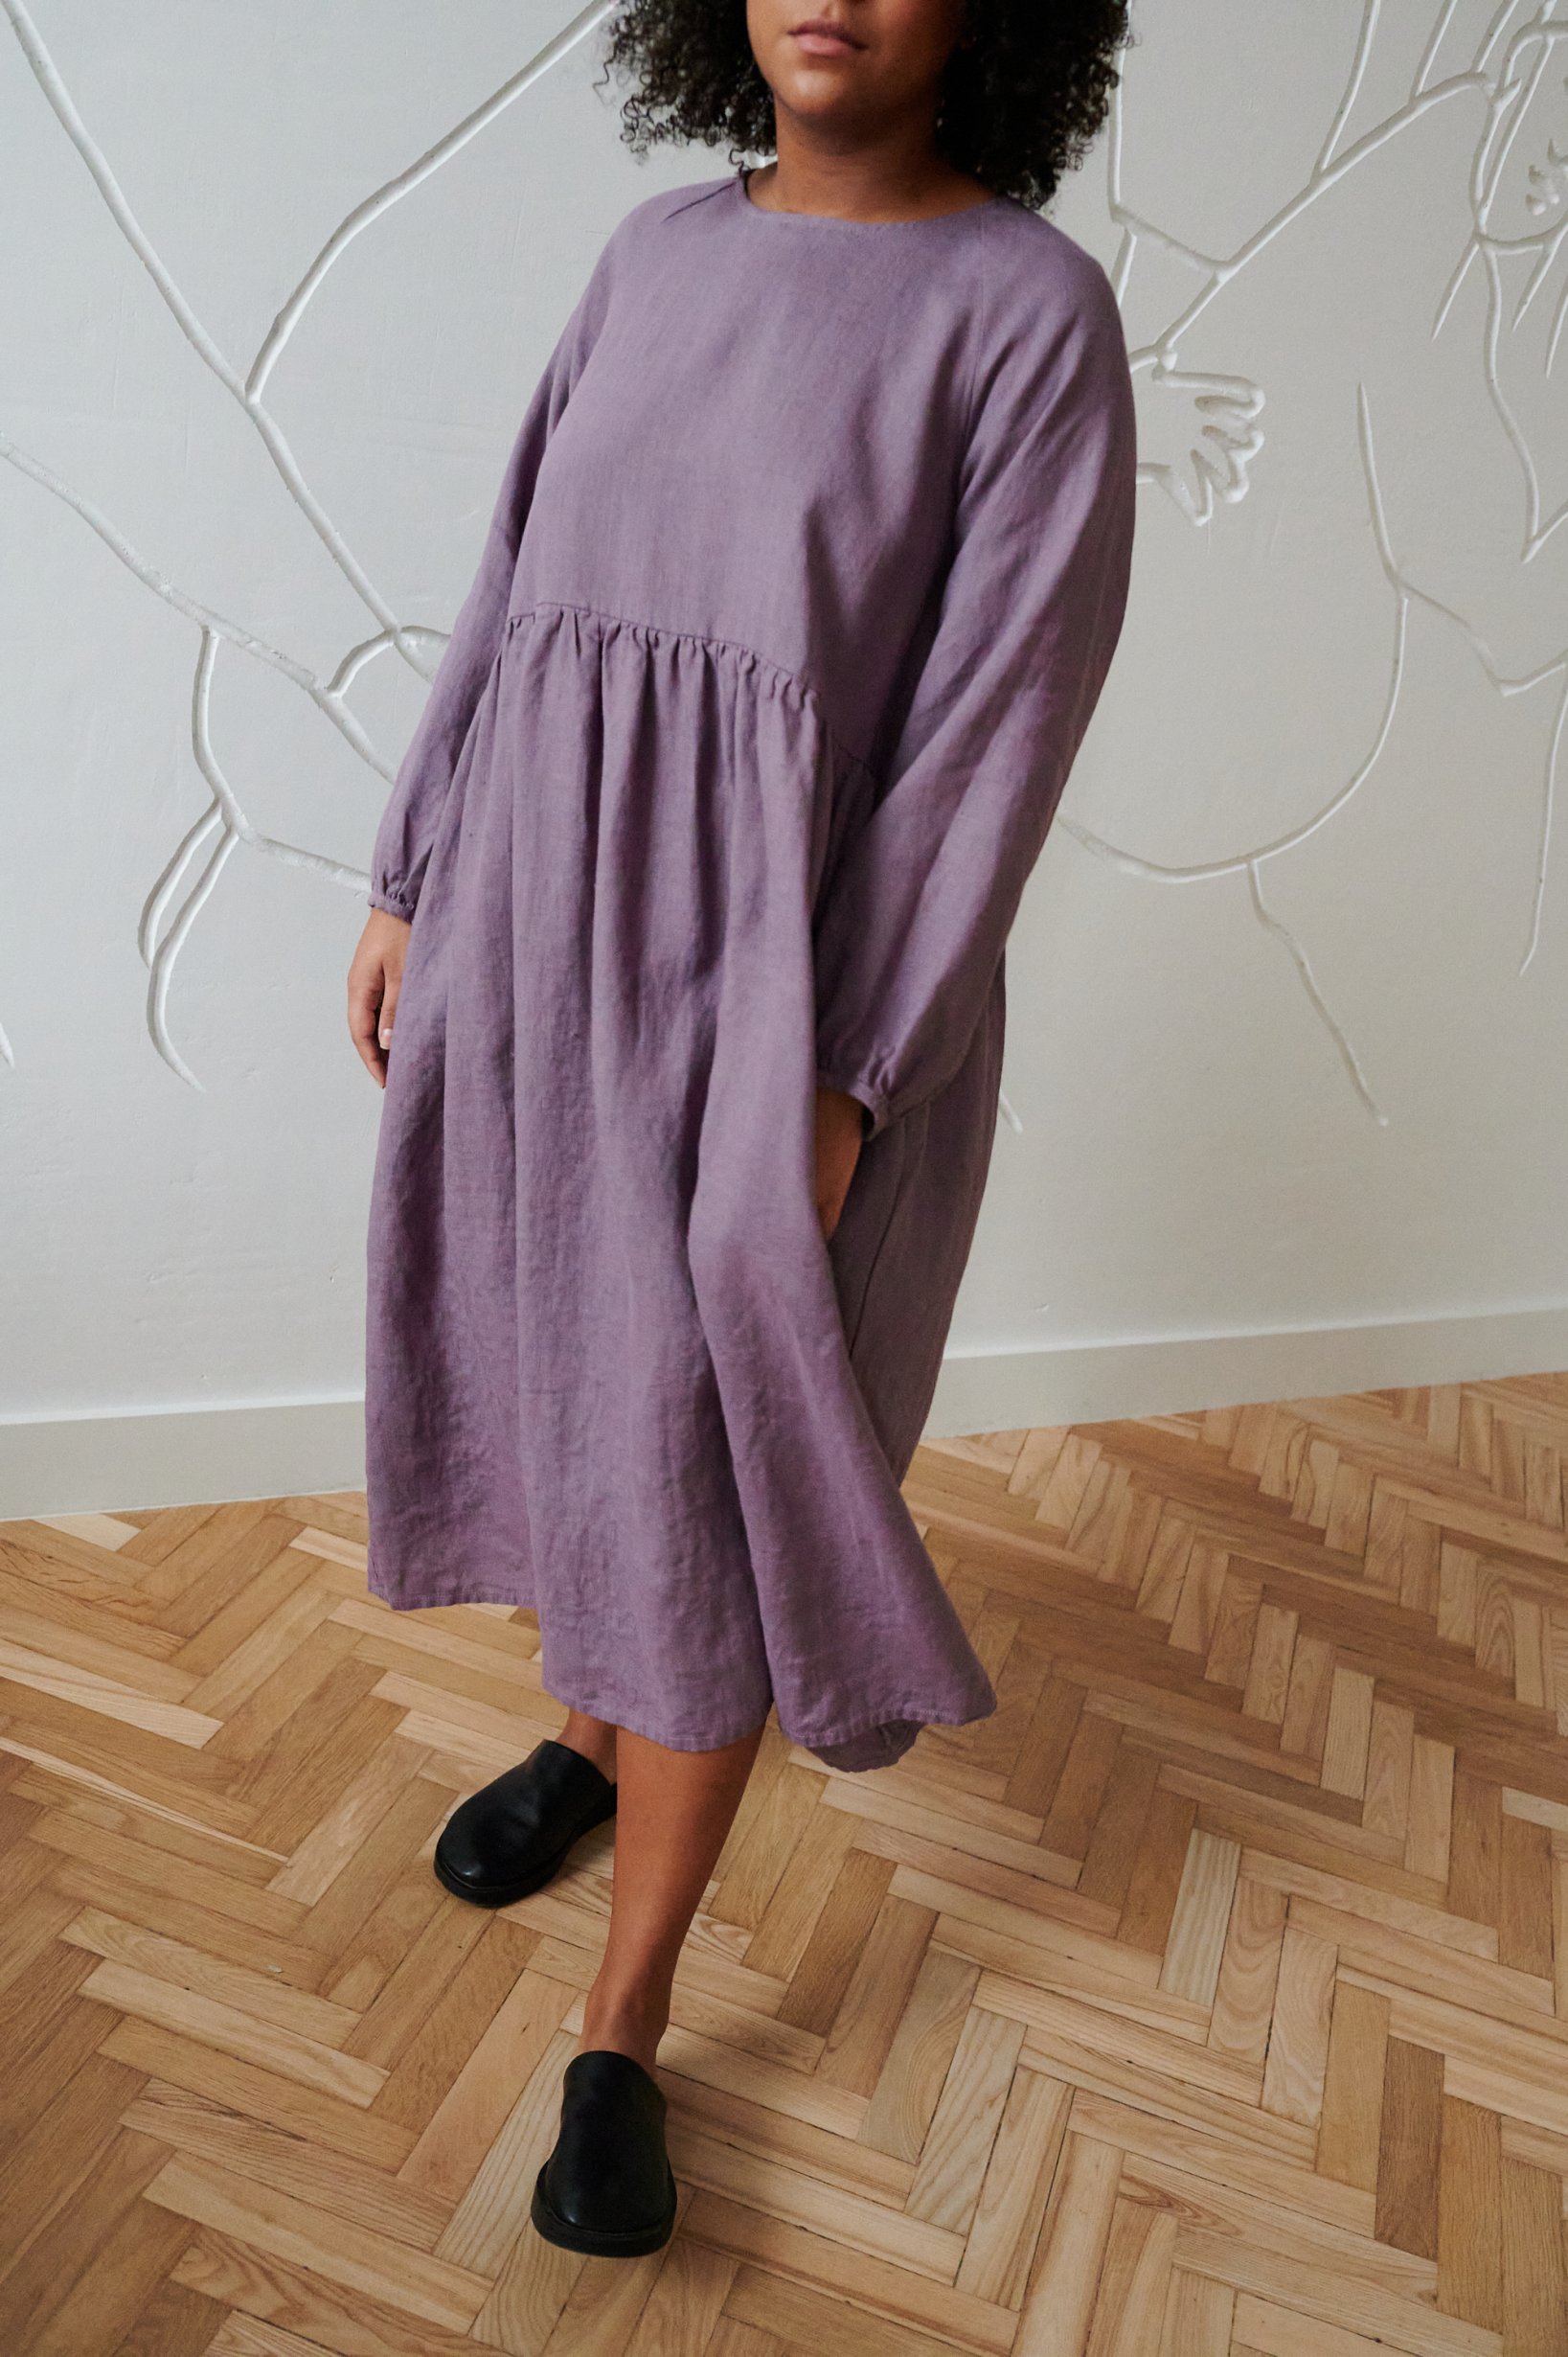 A-line silhouette purple linen dress details